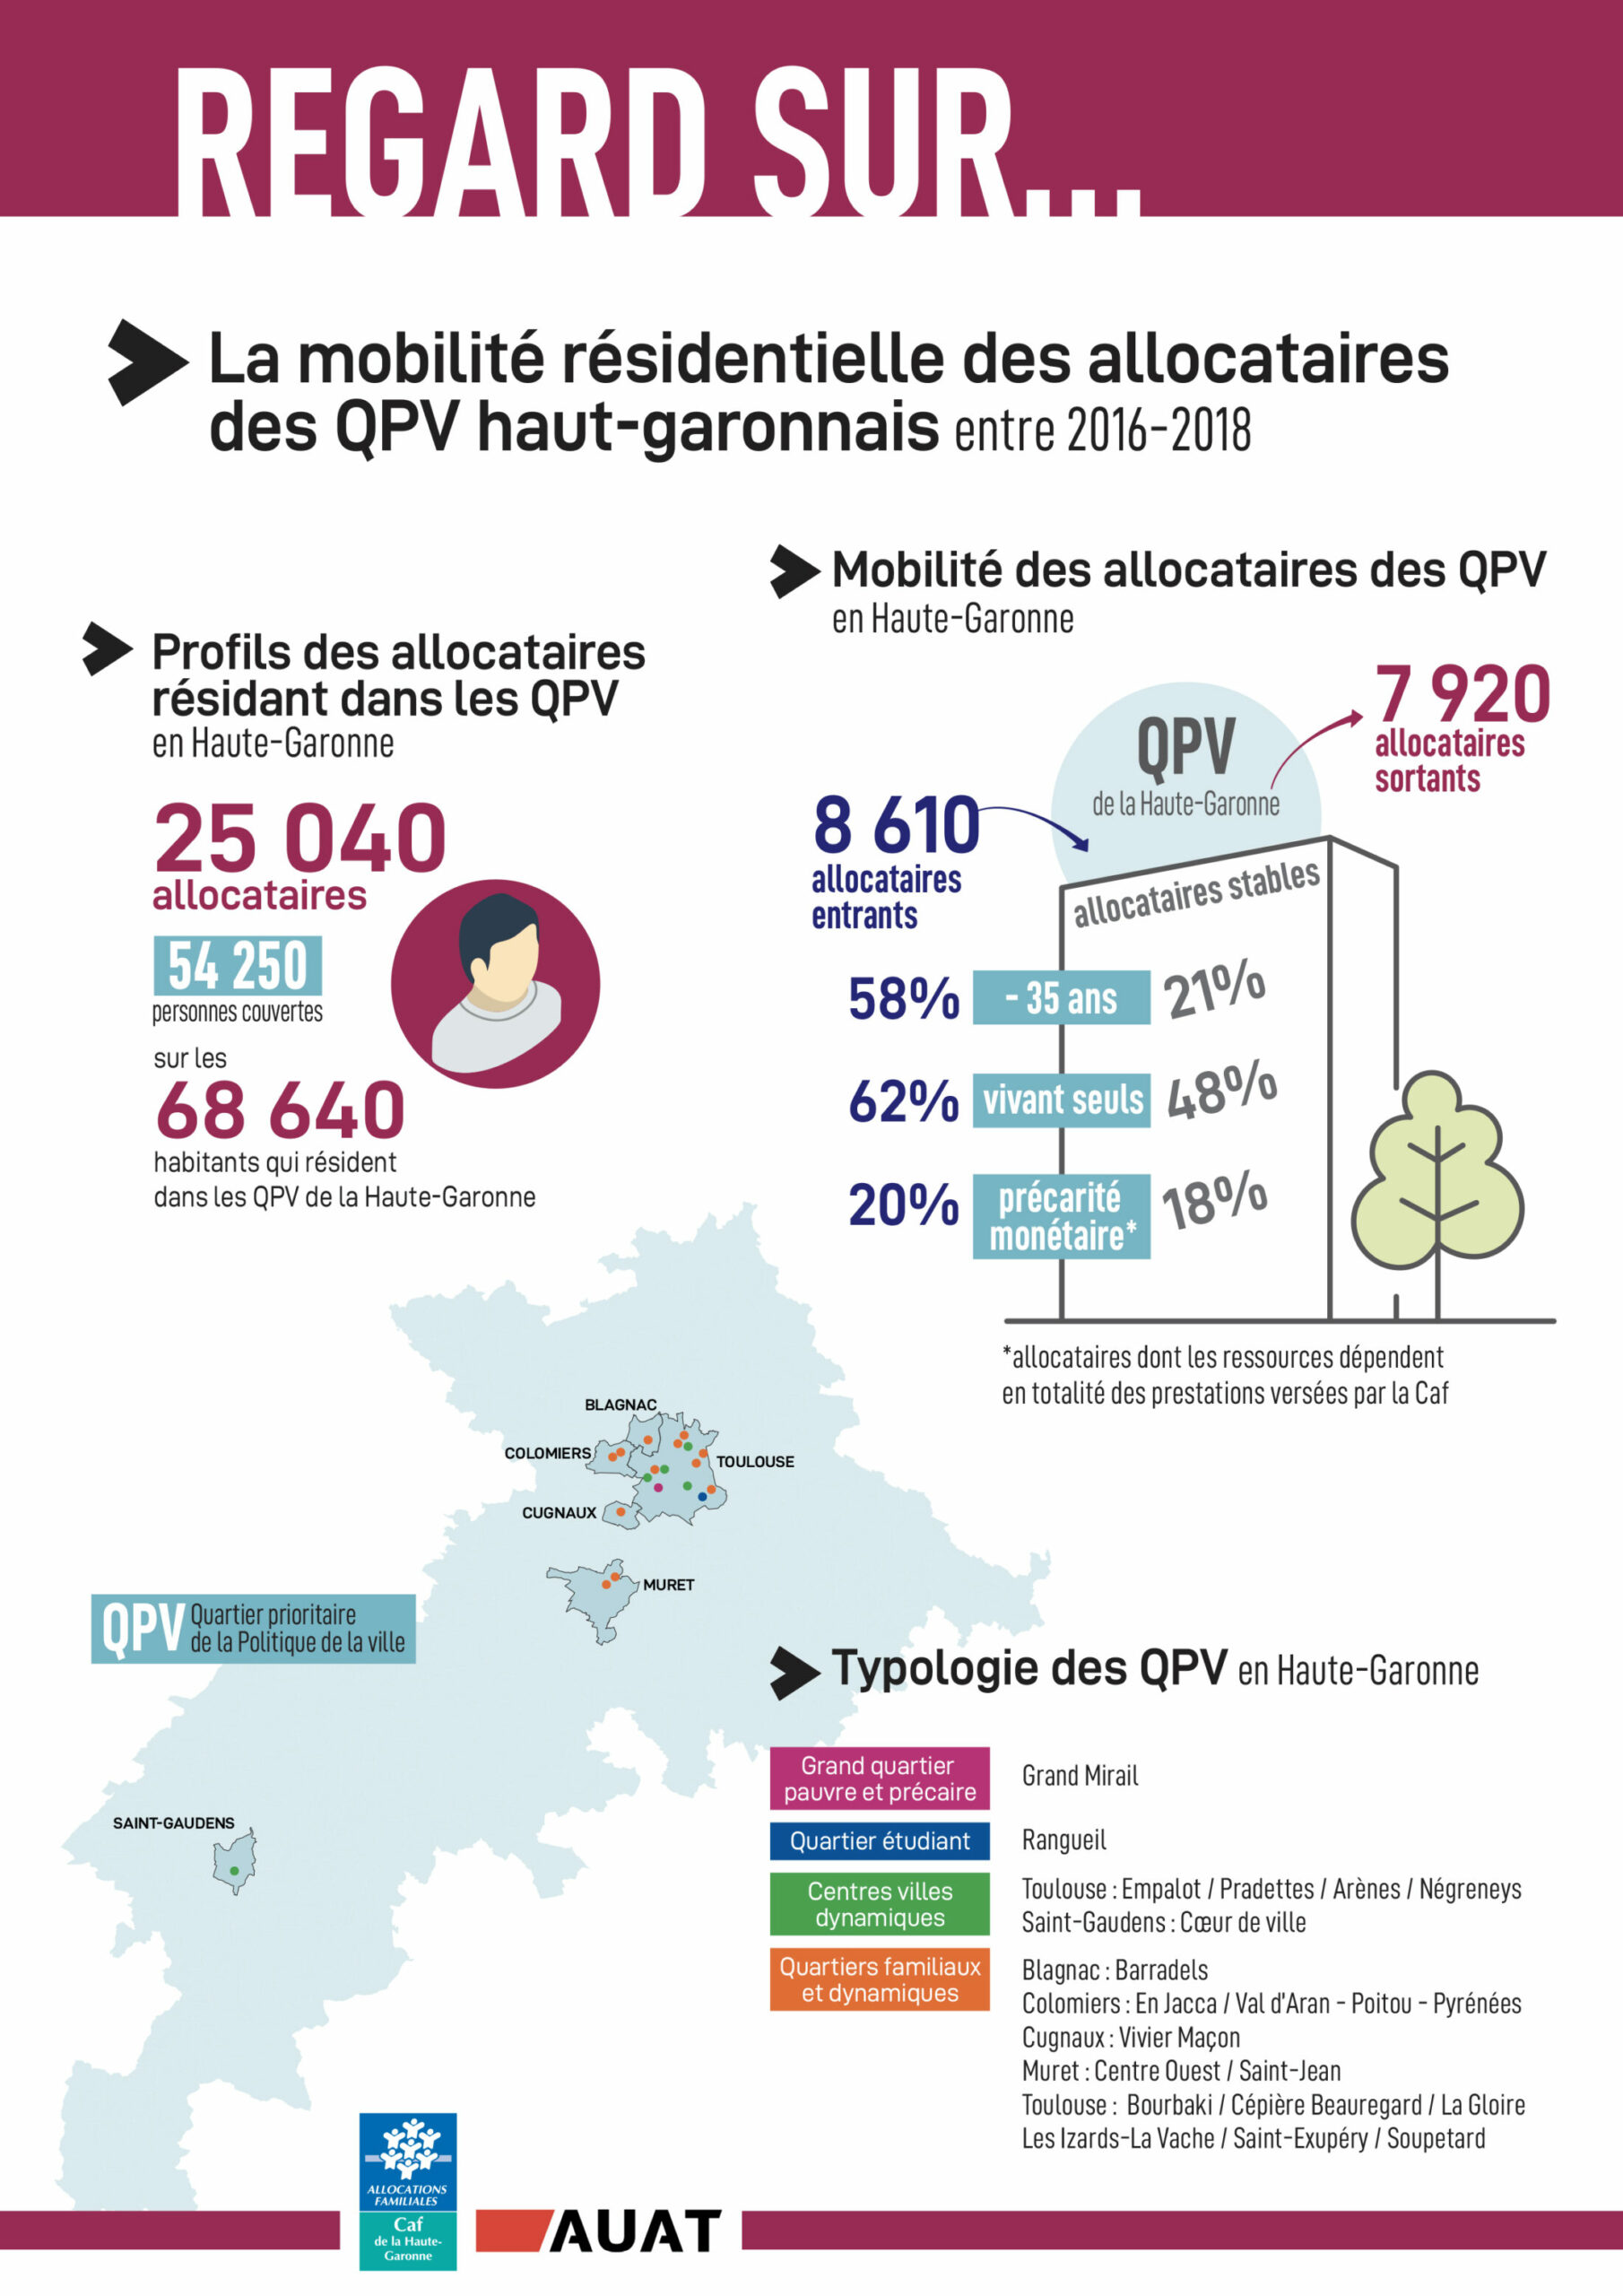 Infographie sur la mobilité résidentielle des allocataires des quartiers prioritaires de la politique de la ville (QPV) en Haute-Garonne / 2016-2018